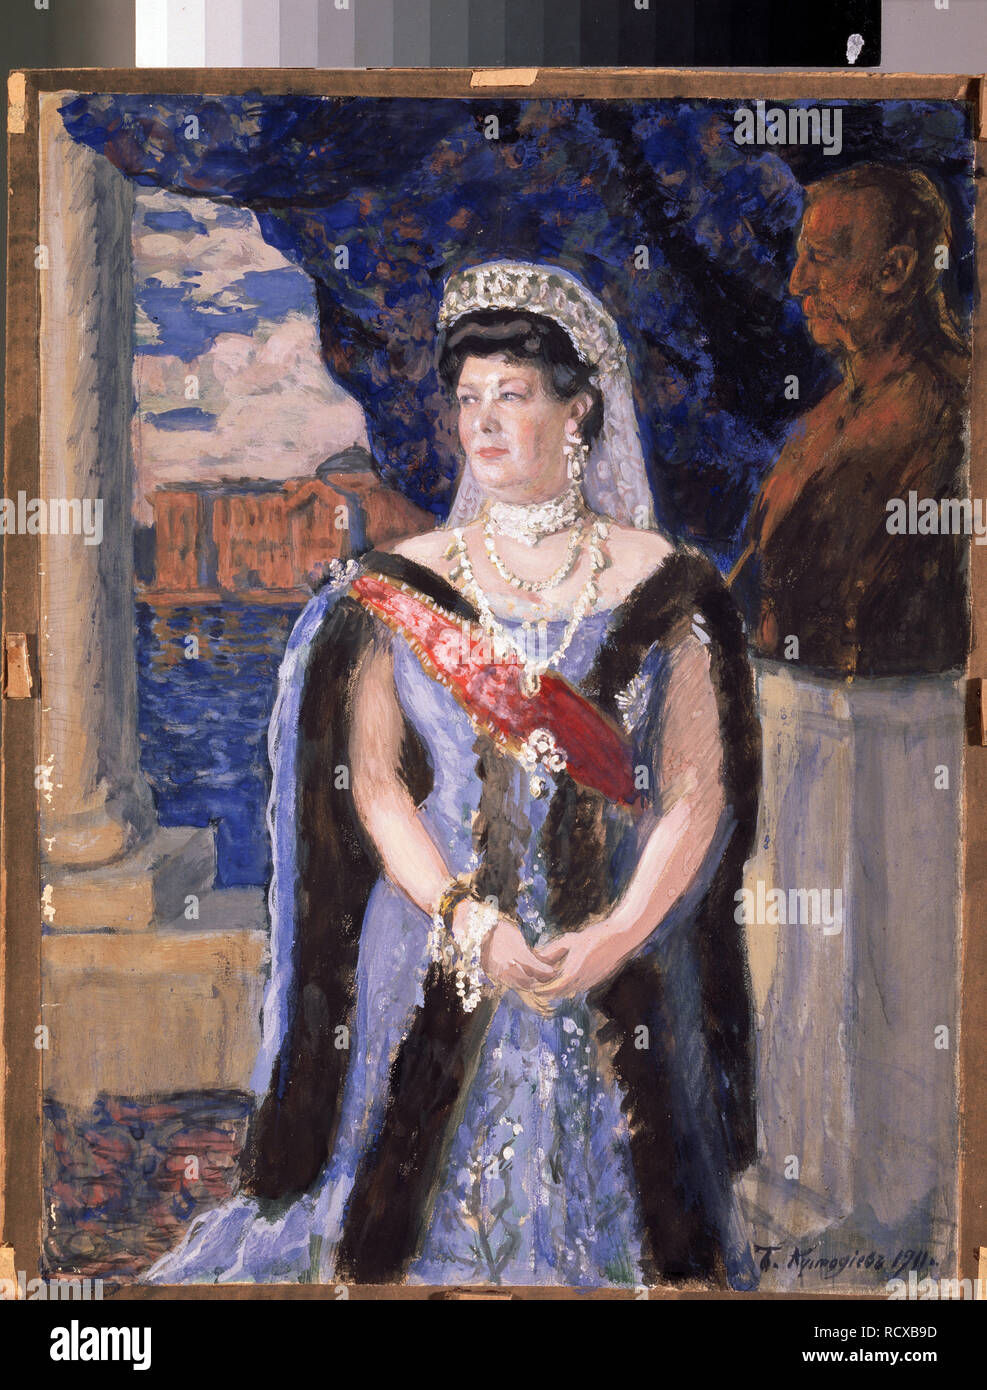 Portrait of the Grand Duchess Maria Pavlovna (1854-1920). Museum: State Art Museum, Yaroslavl. Author: Kustodiev, Boris Michaylovich. Stock Photo